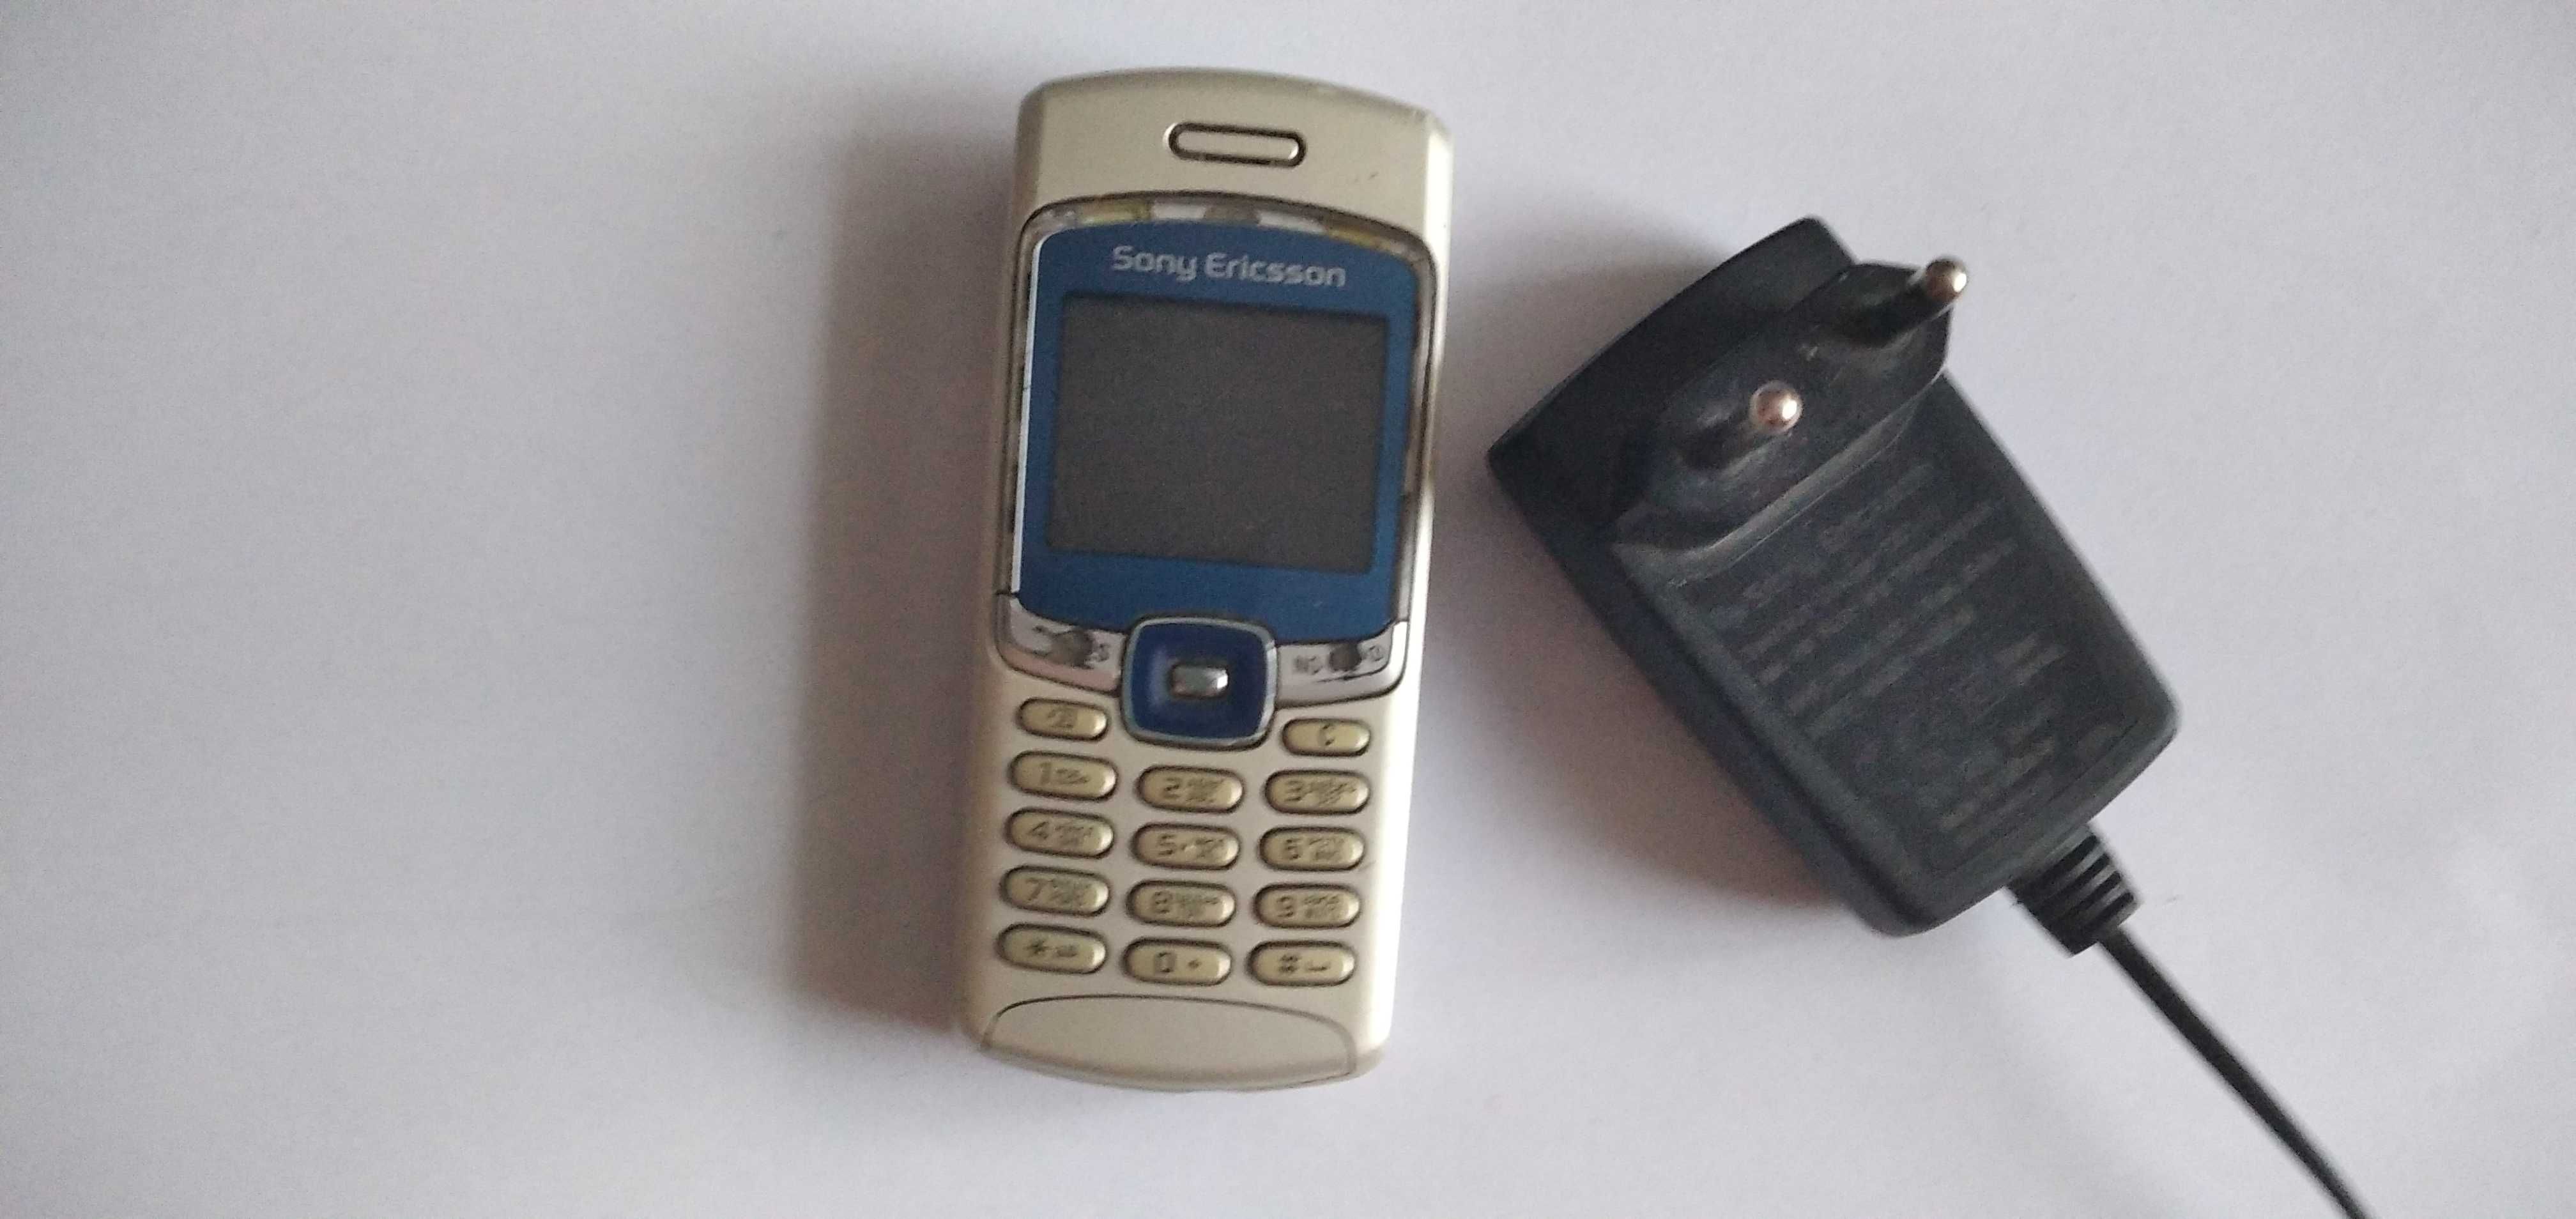 телефон
Sony Ericsson T230